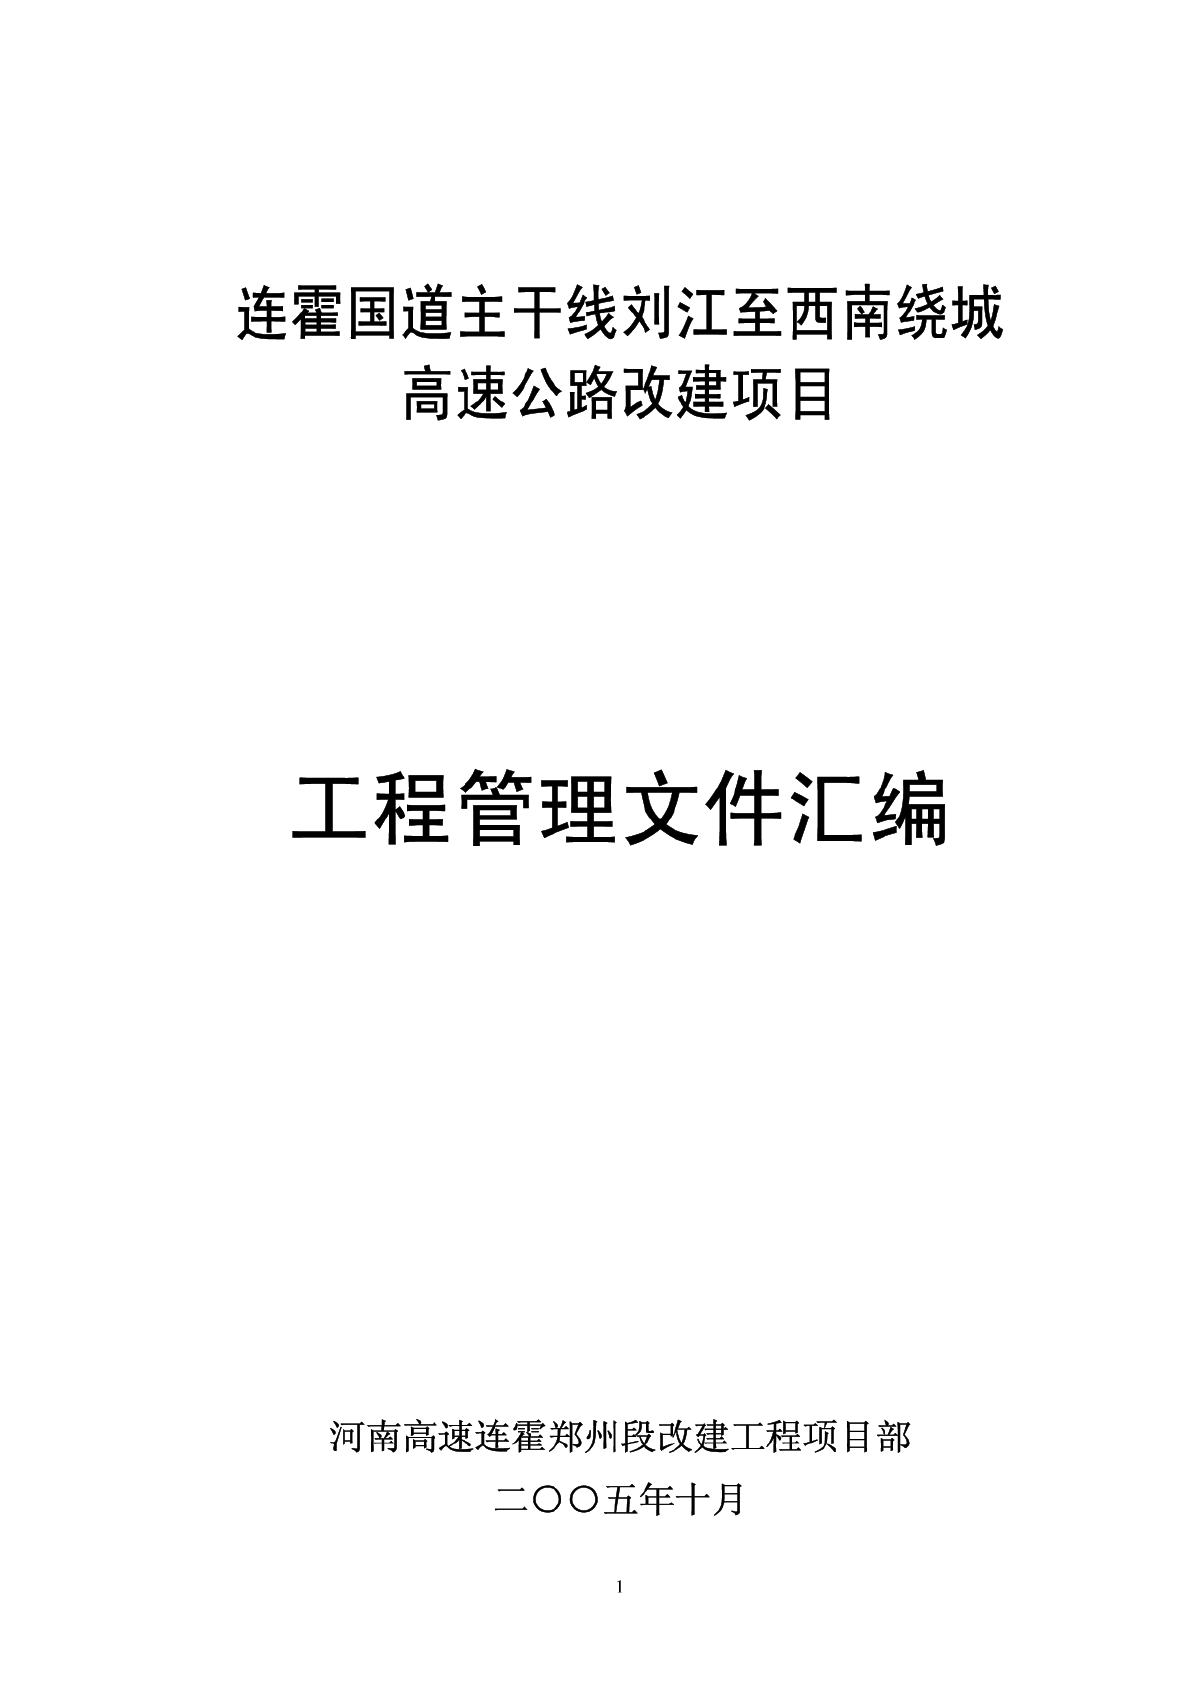 国道主干线刘江至西南绕城高速公路改建项目工程管理文件汇编-图一